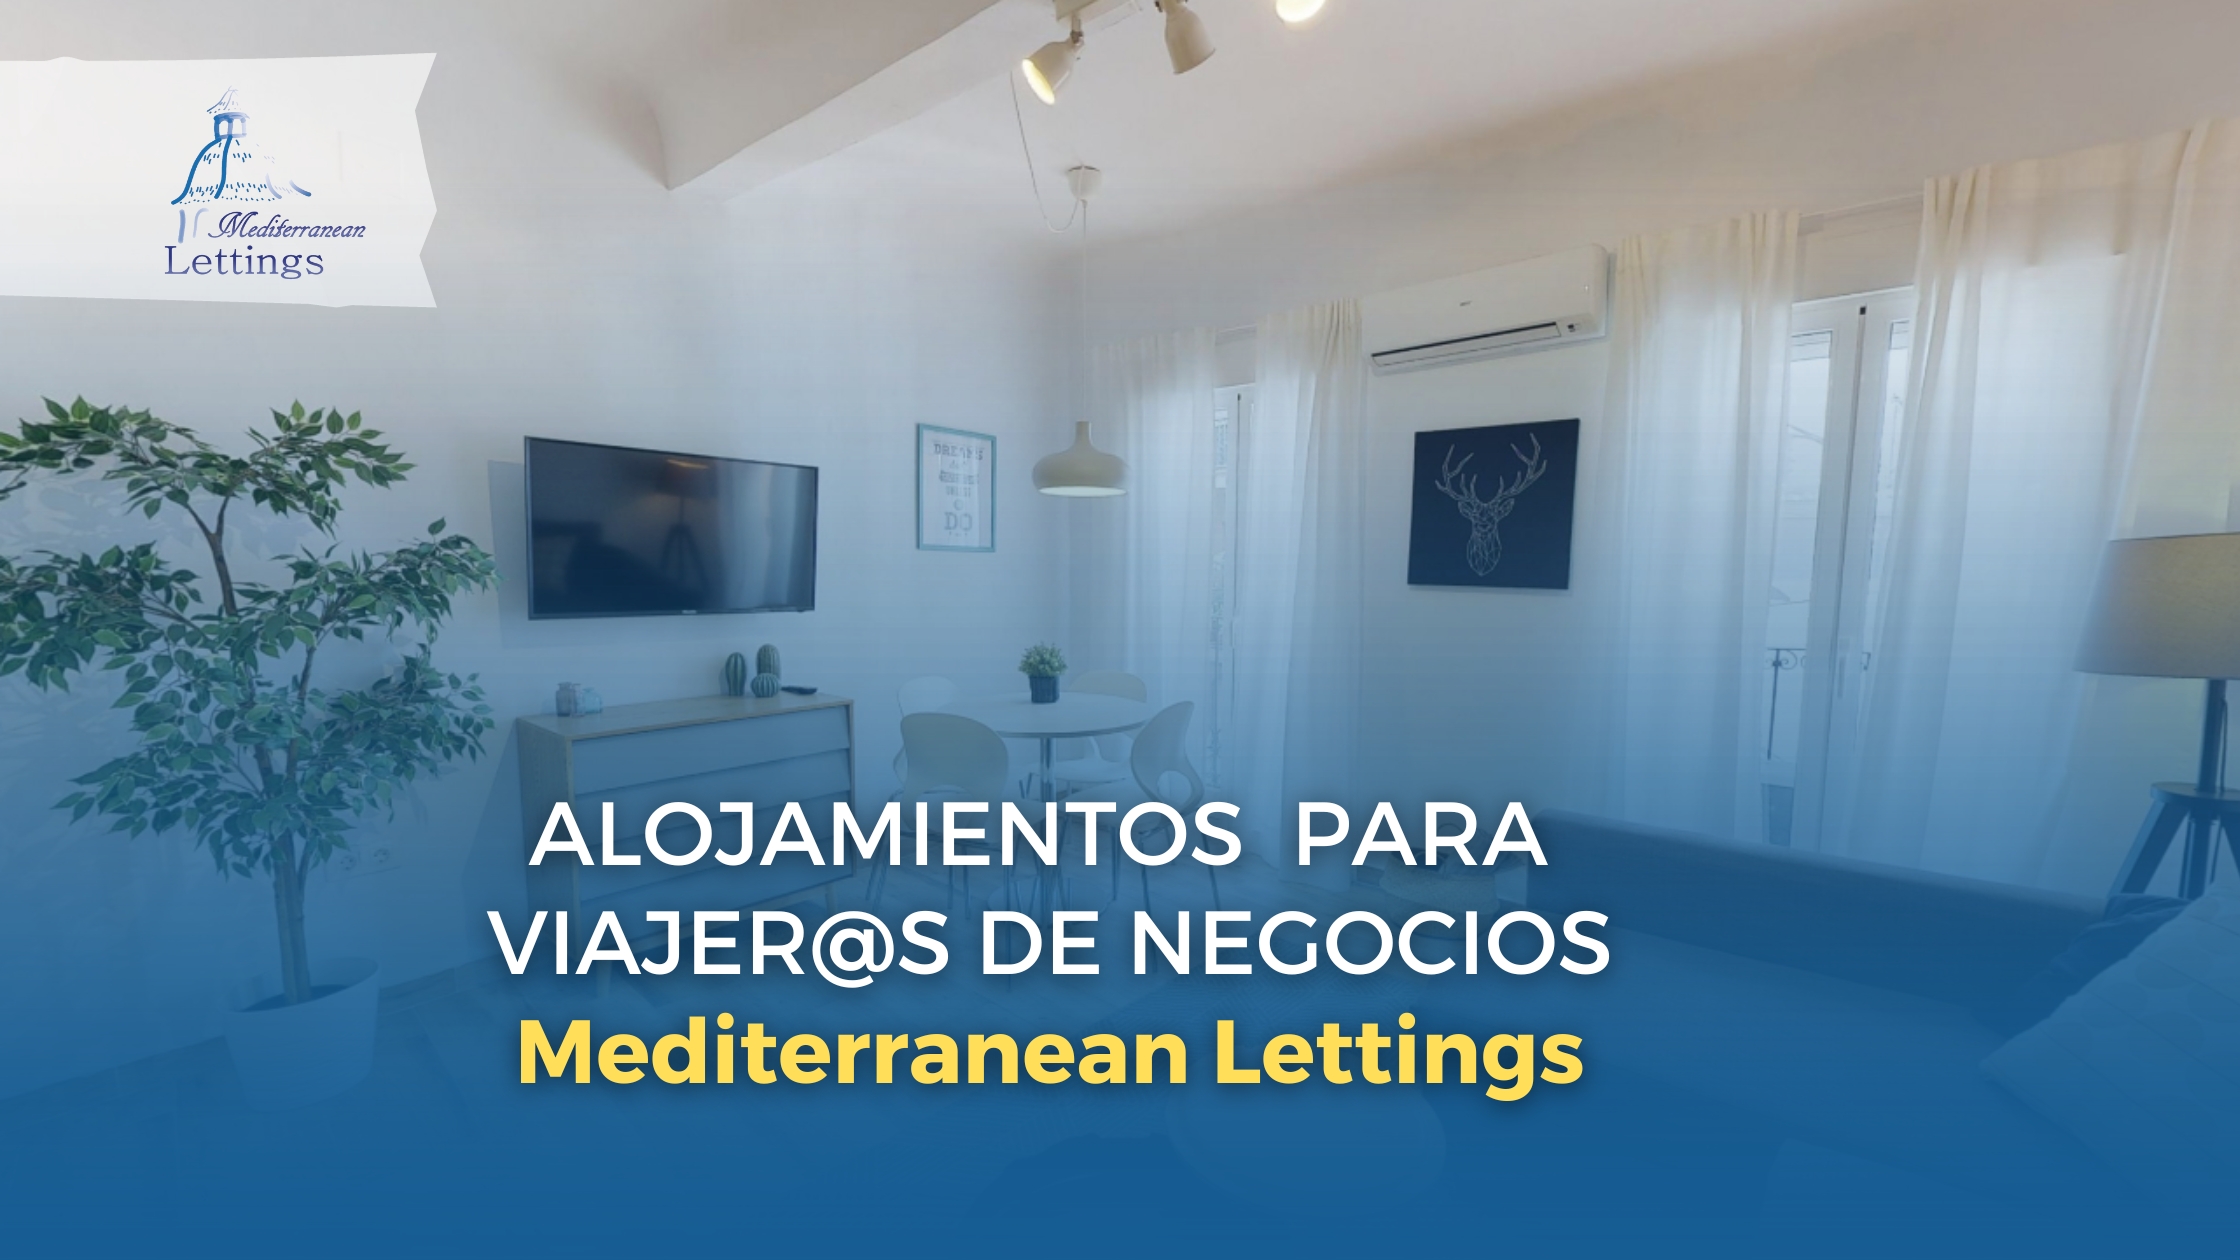 Alojamiento Ideal para Viajeros Corporativos en Alicante